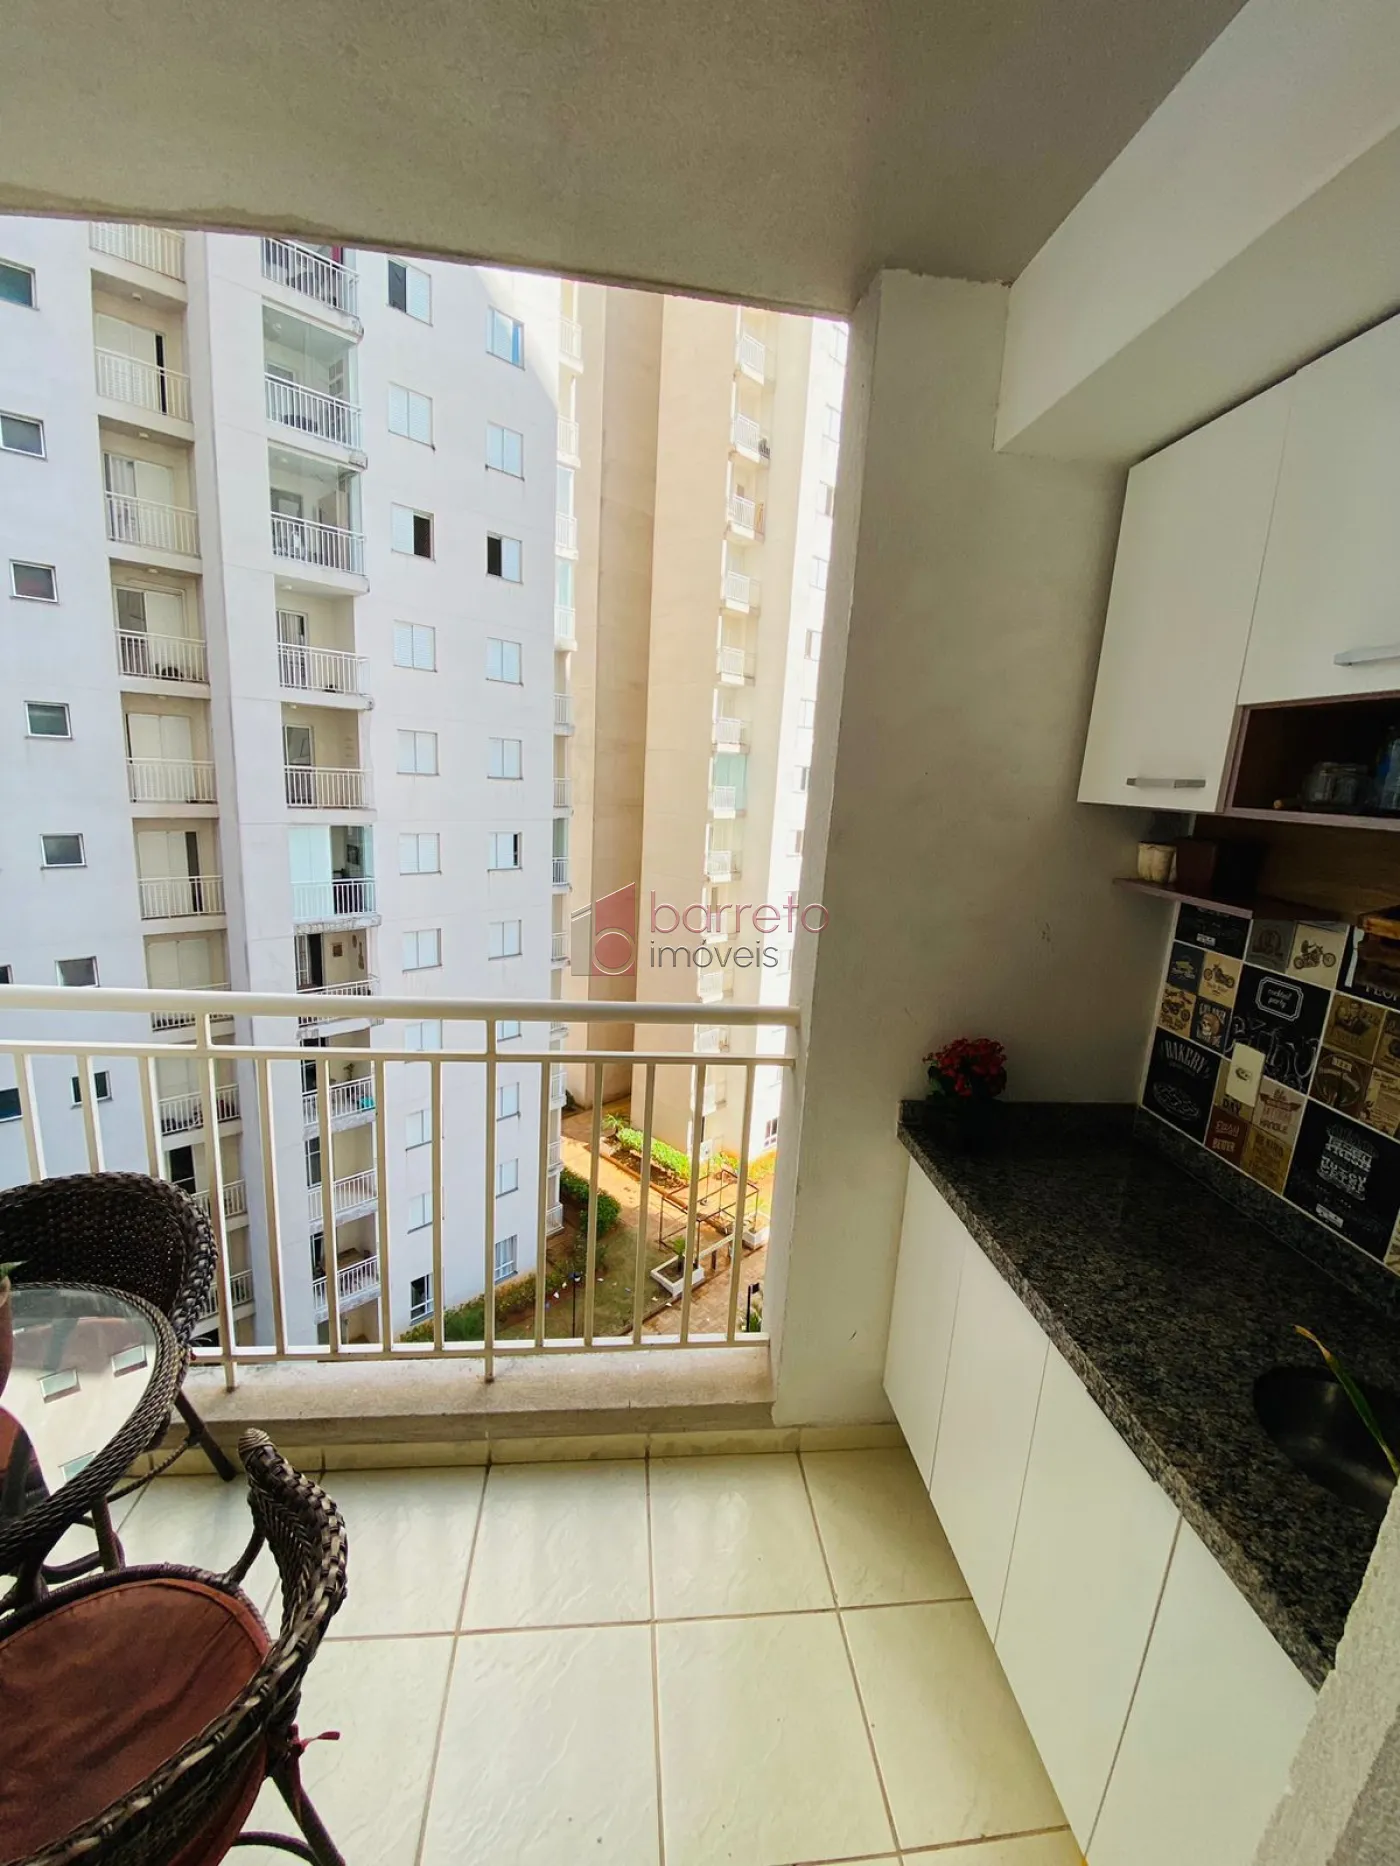 Alugar Apartamento / Padrão em Jundiaí R$ 11,11 - Foto 5